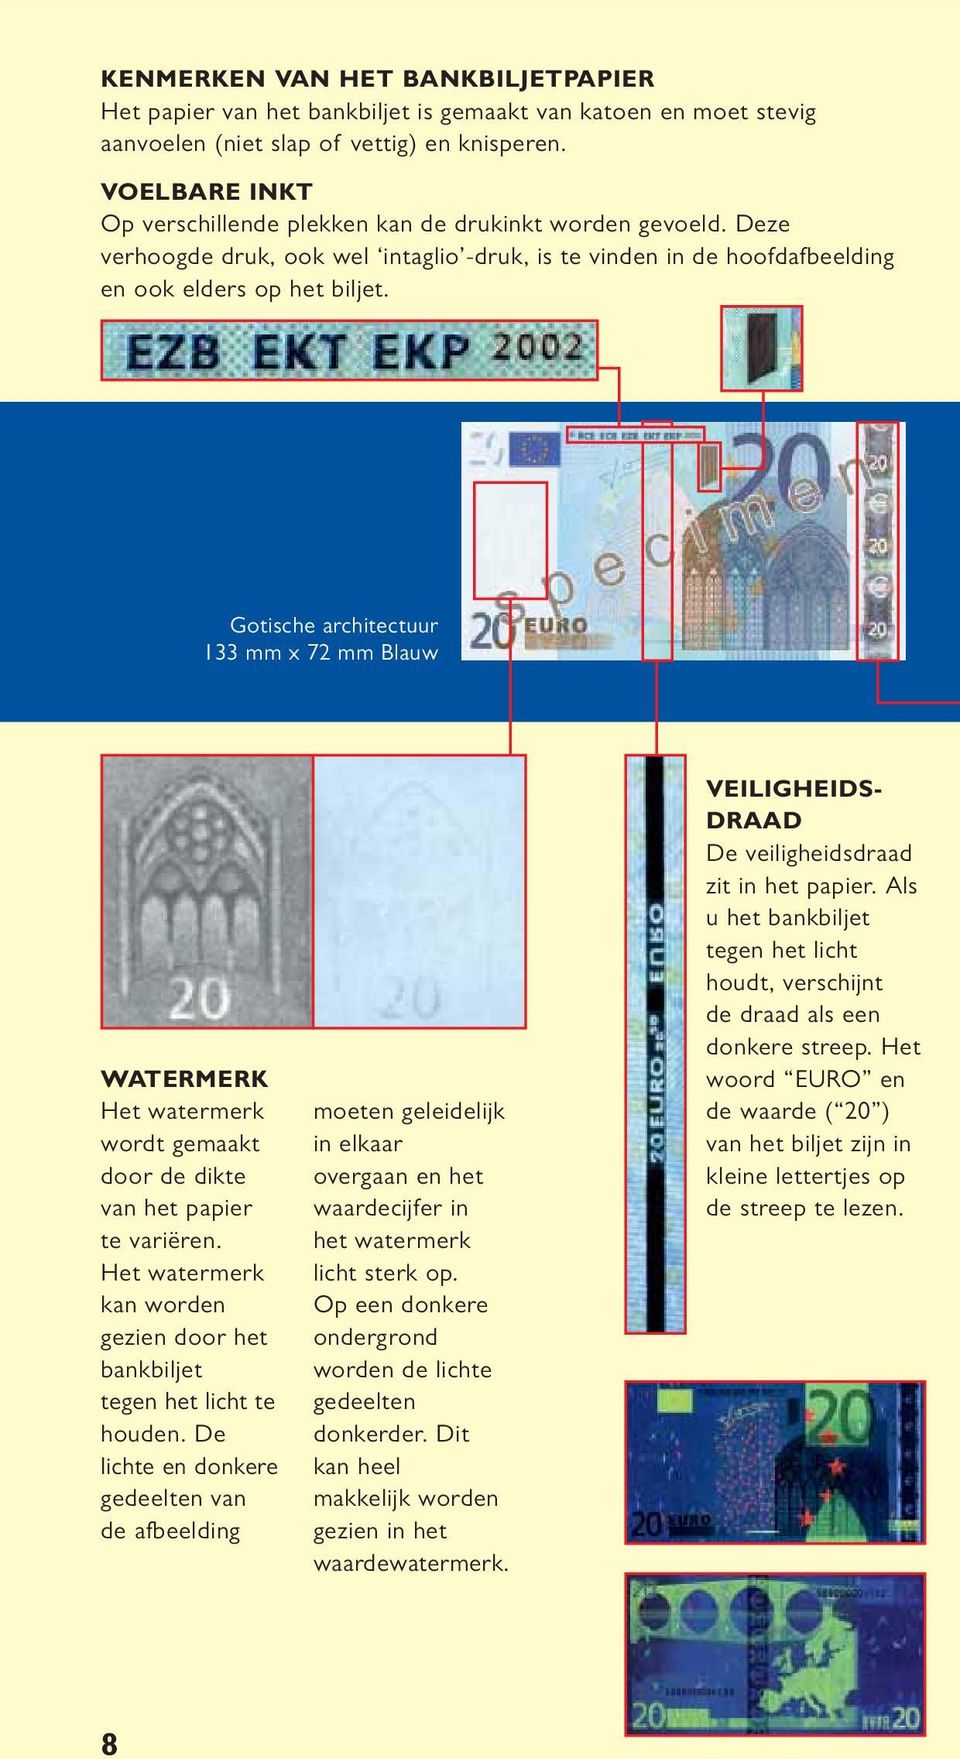 Gotische architectuur 133 mm x 72 mm Blauw WATERMERK wordt gemaakt door de dikte van het papier te variëren. kan worden gezien door het bankbiljet tegen het licht te houden.